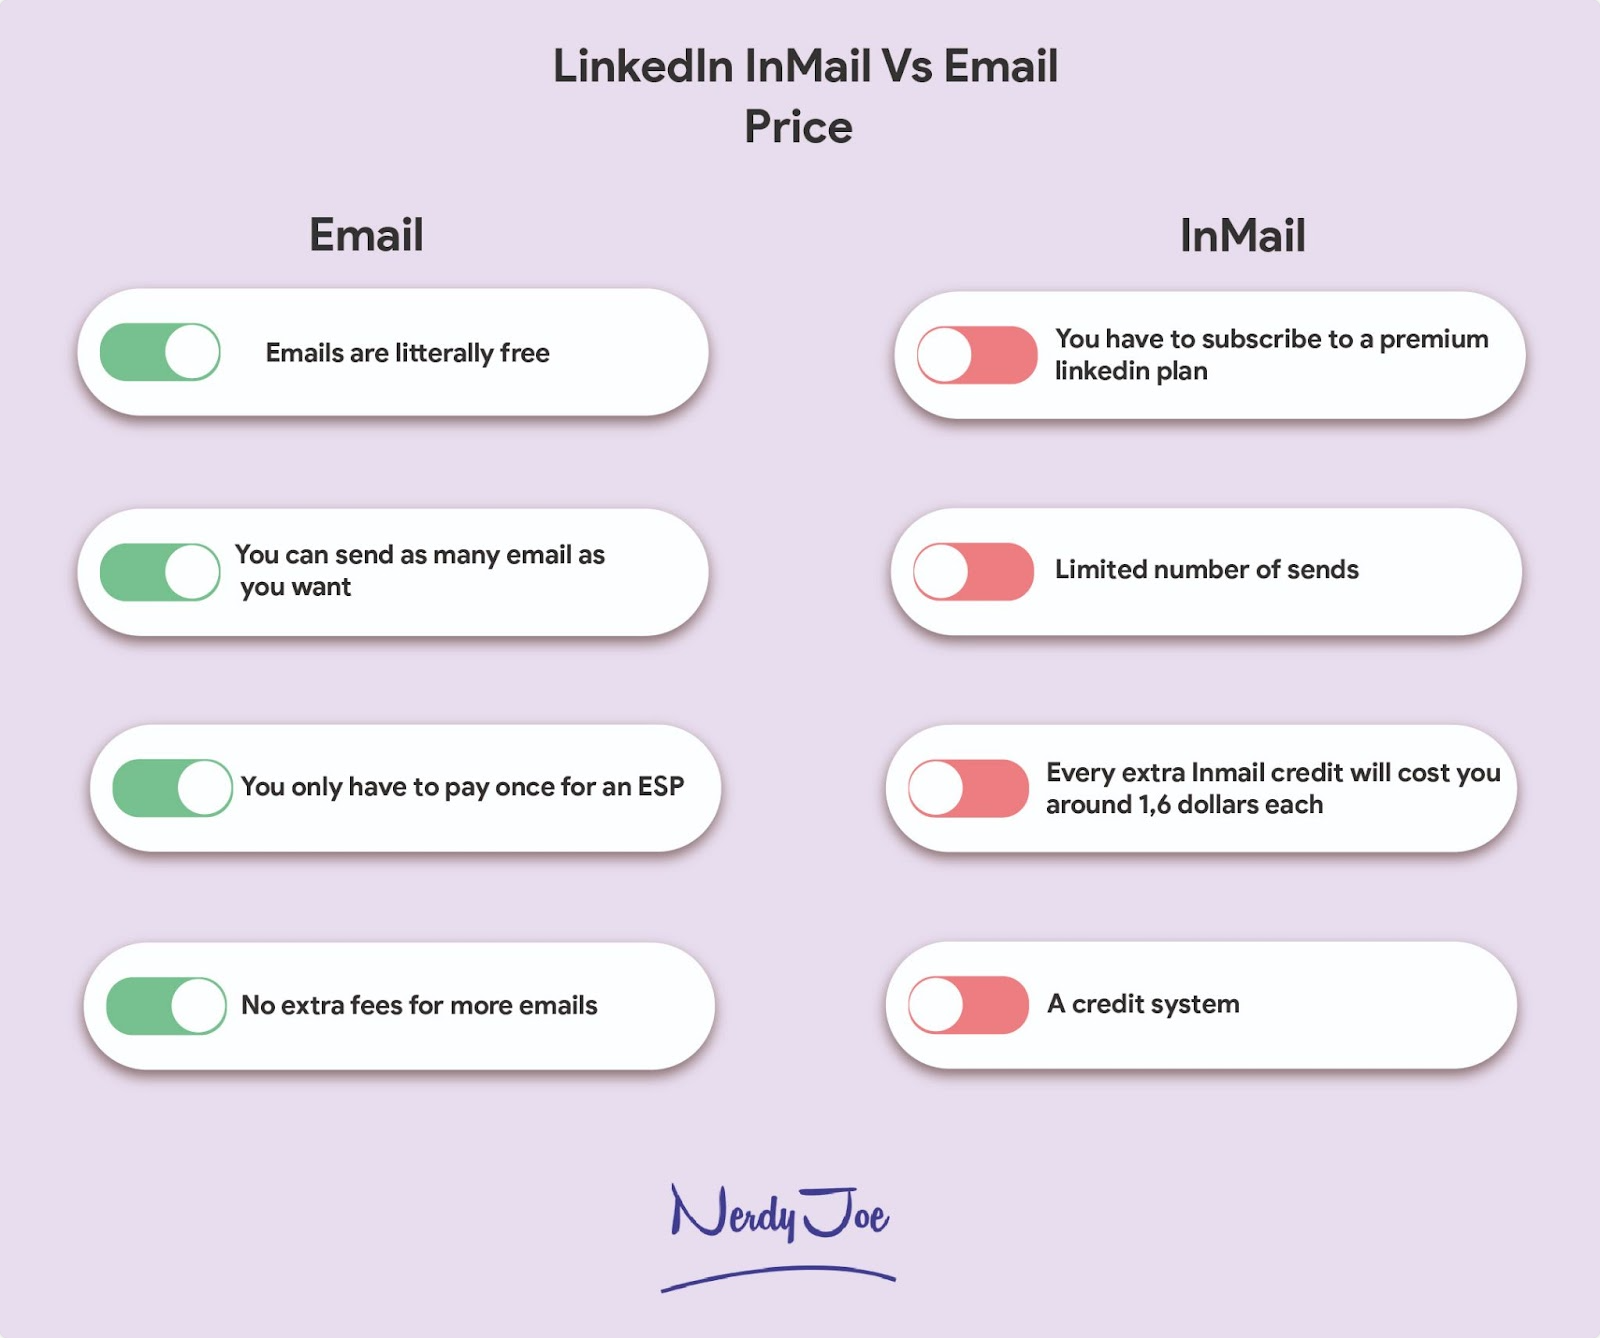 LinkedIn InMail vs Email: Price